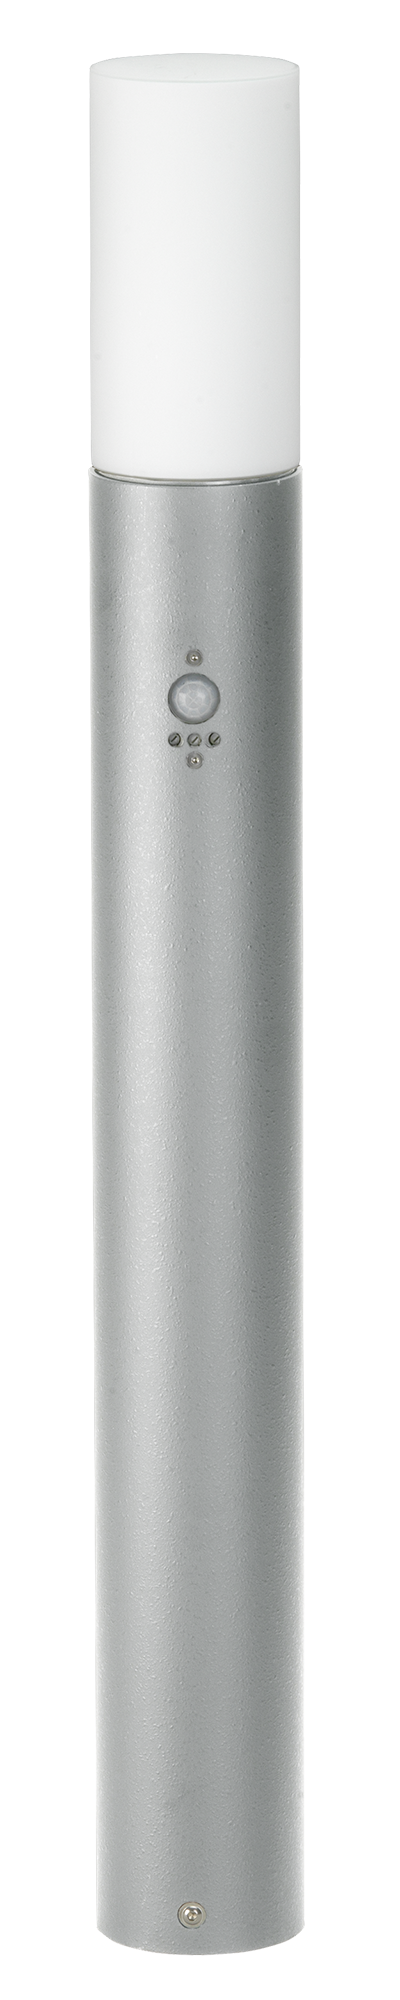 Bodenleuchten, Pollerleuchten, Kandelaber & Bodenlampen für außen von Albert Leuchten Pollerleuchte Typ Nr. 2278 mit Bewegungsmelder 692278